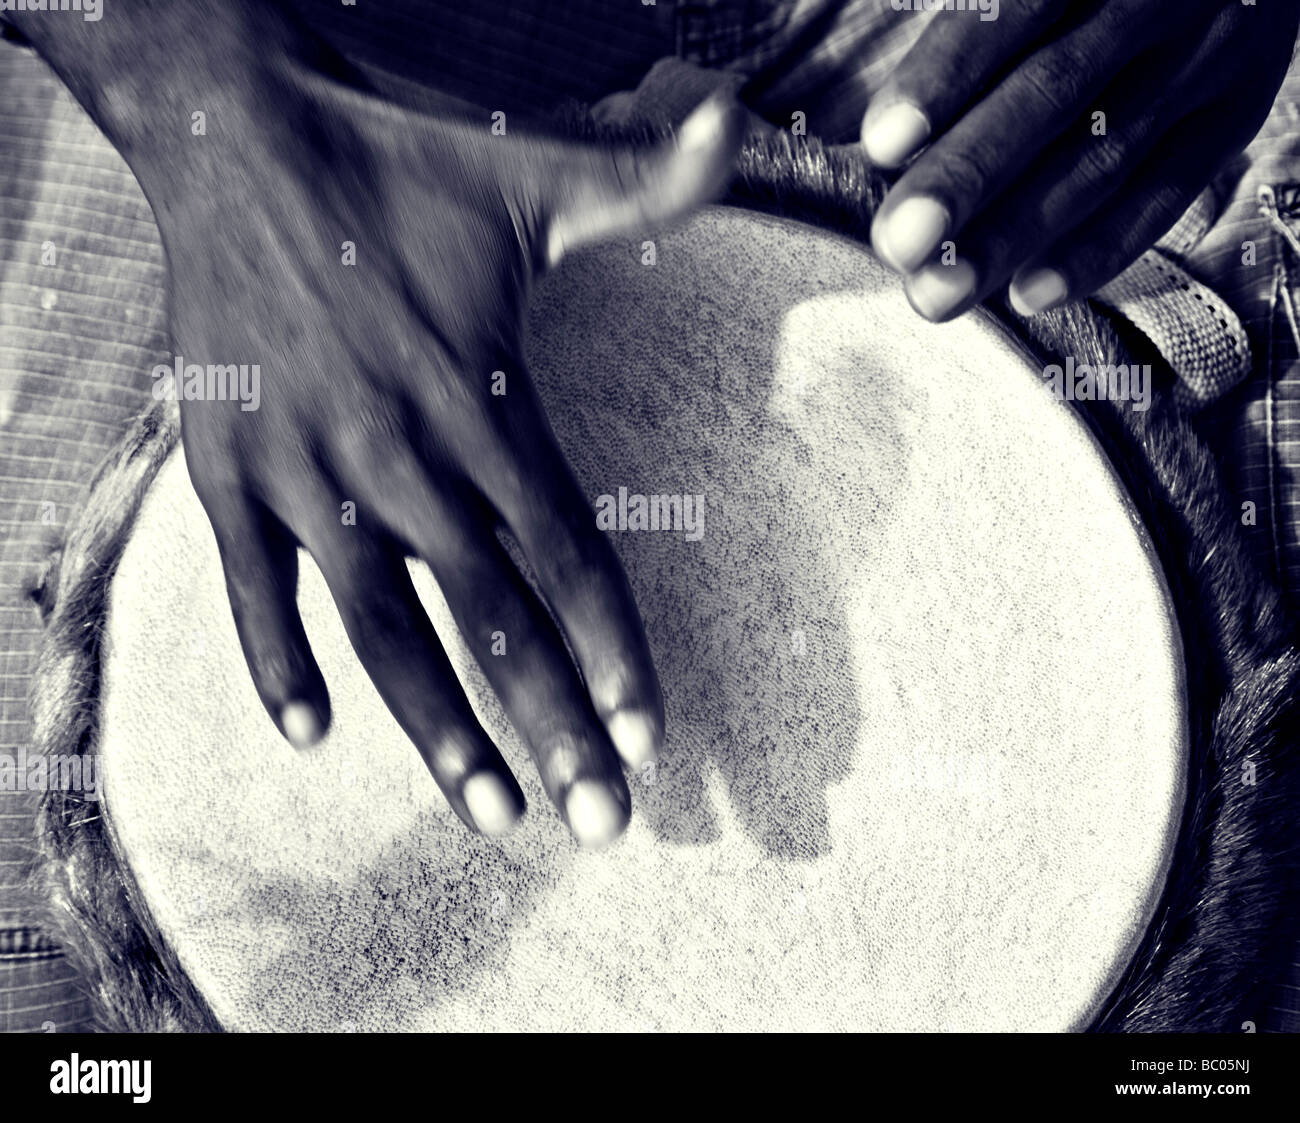 Split-tonica fotografia di close-up shot di un uomo nero con le mani in mano battendo un tamburo. colore originale versione presso Alamy ref BC05N2 Foto Stock